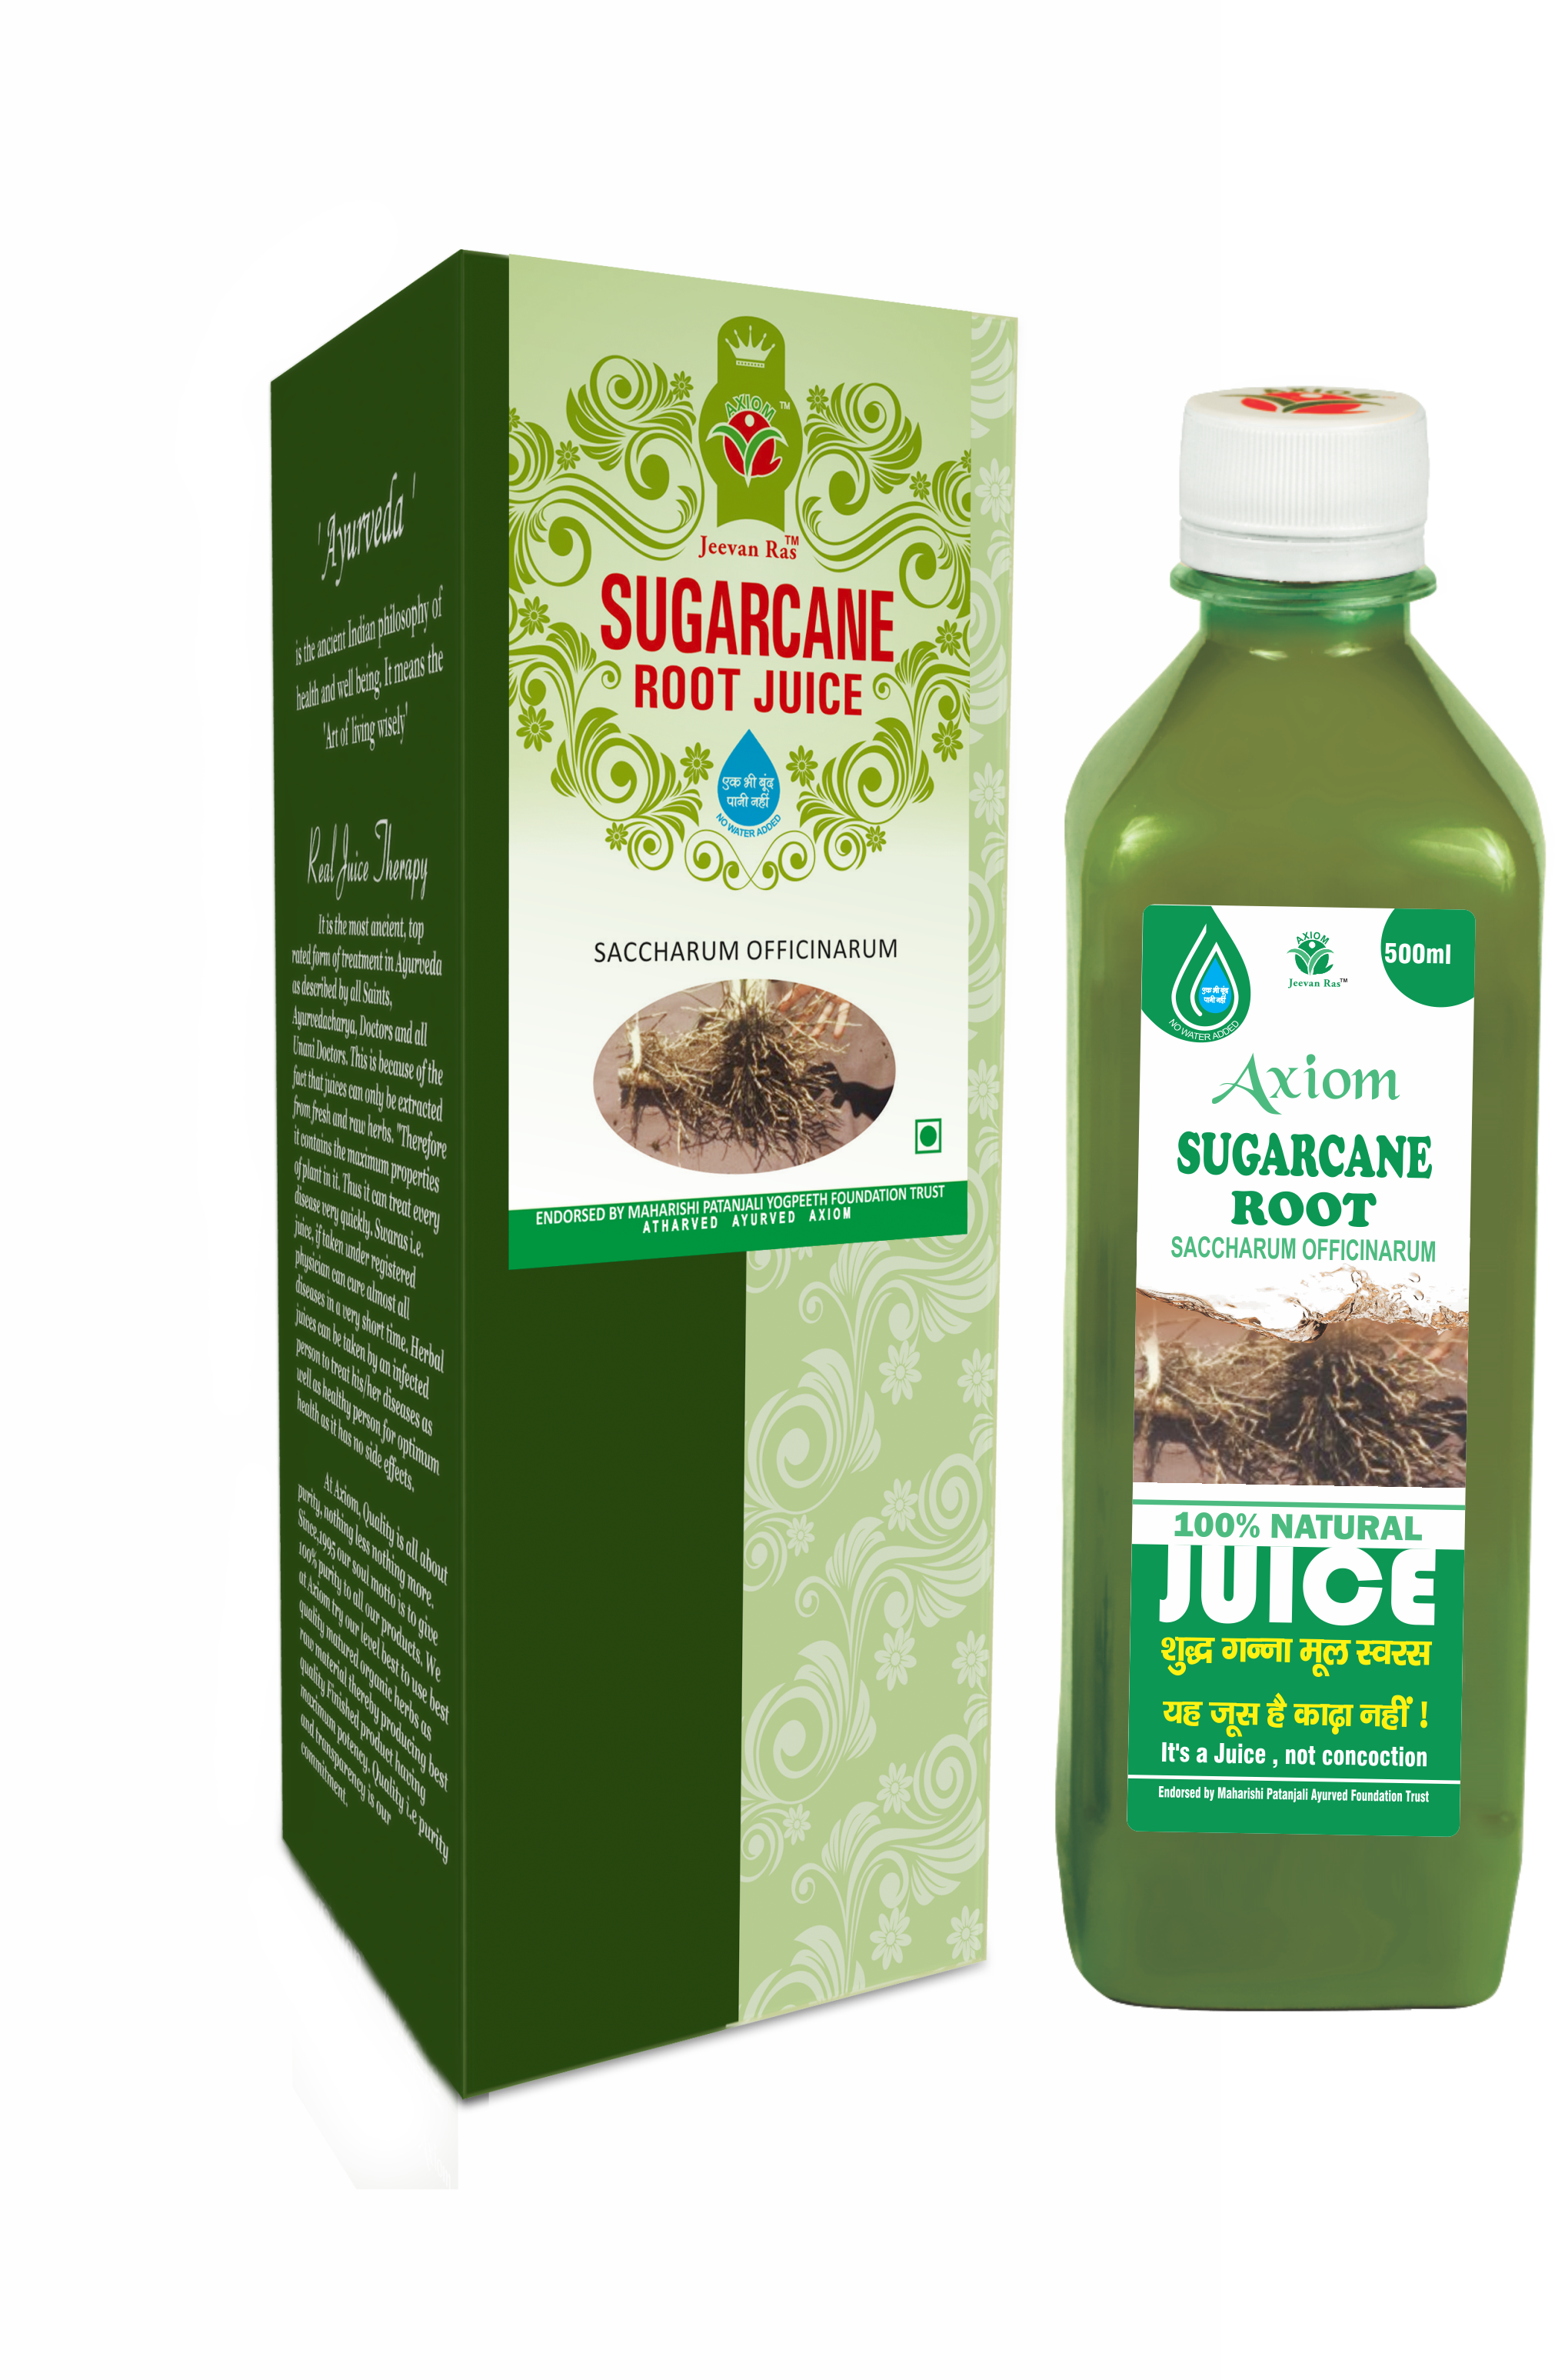 Buy Axiom Sugarcane Root Juice at Best Price Online